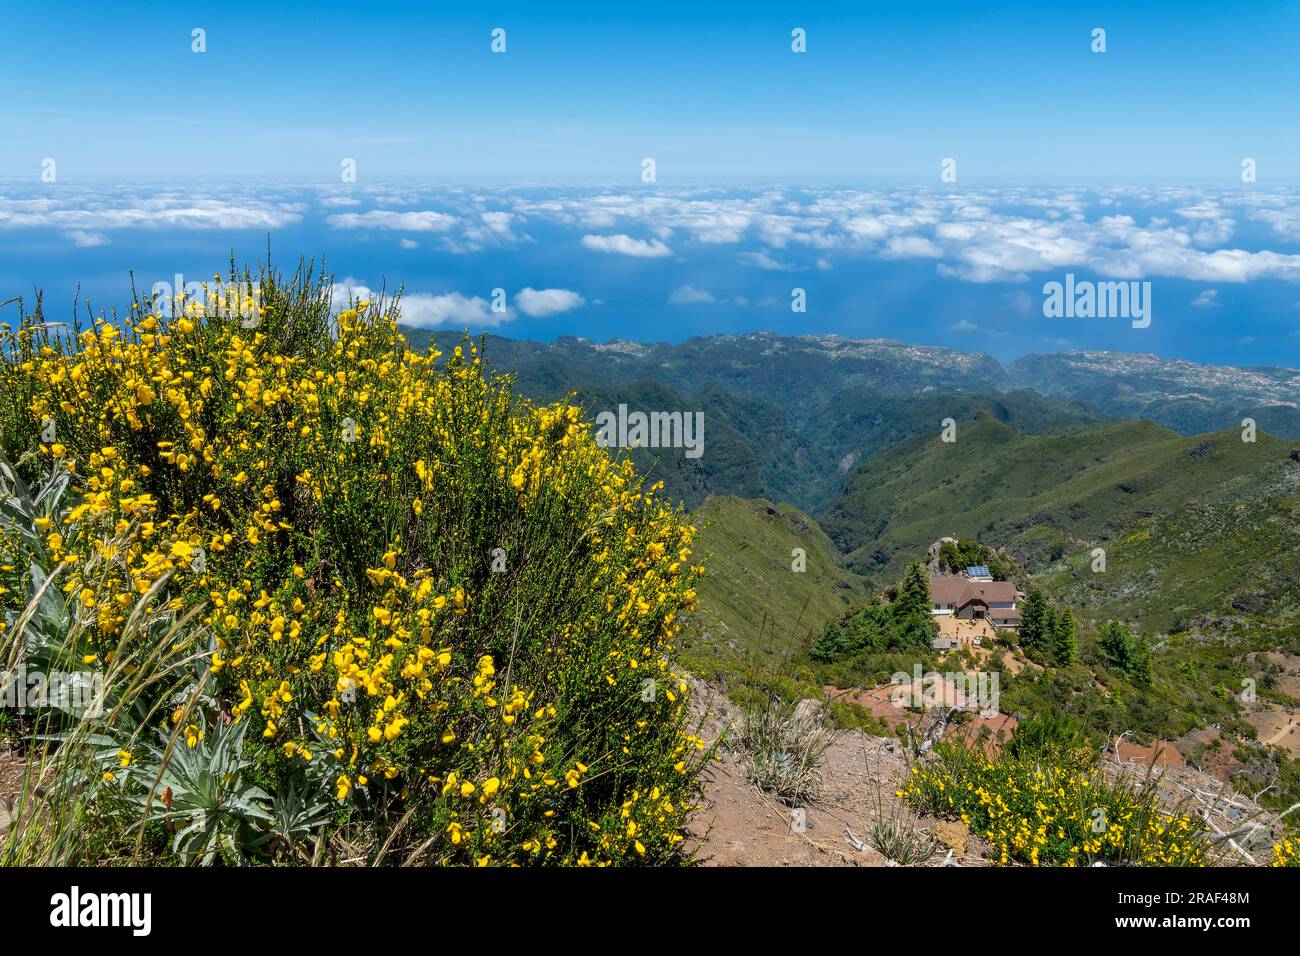 Scenic landscape on Pico Ruivo mountain in Madeira, Portugal Stock Photo